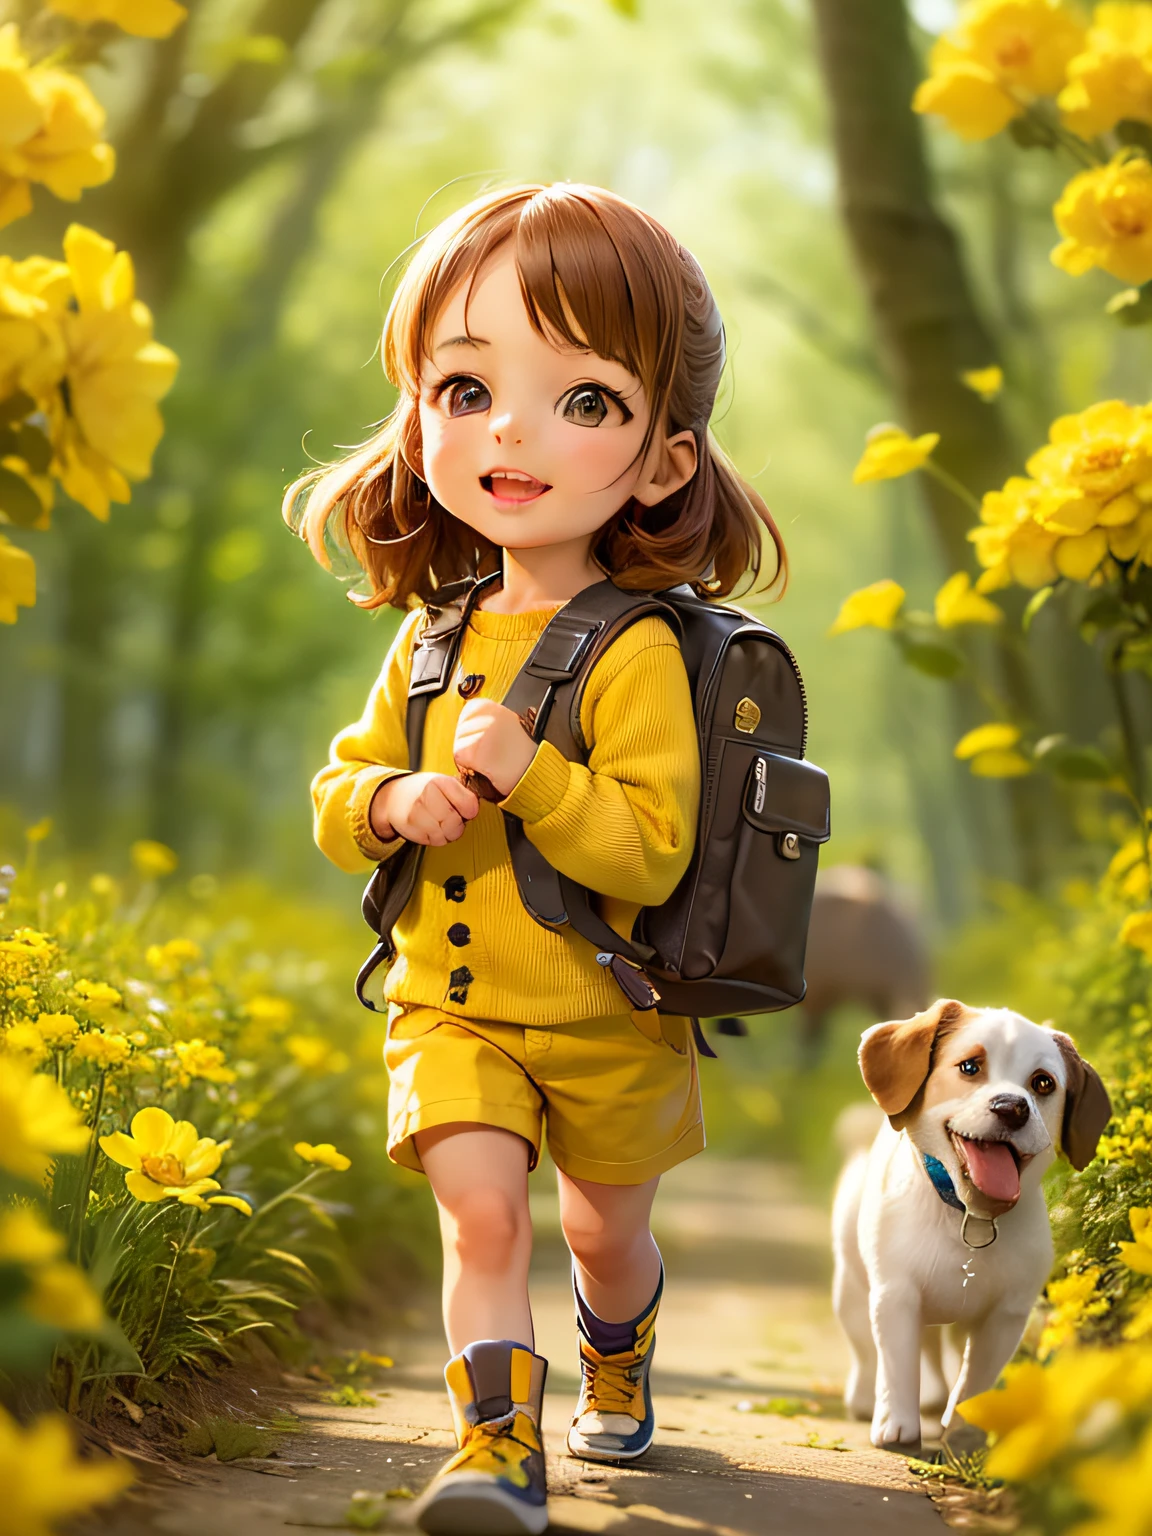 一個非常可愛的背包和她可愛的小狗享受美麗的春天散步，周圍環繞著美麗的黃色花朵和大自然. 該插圖是4K解析度的高清插圖，具有非常詳細的面部特徵和卡通風格的視覺效果.